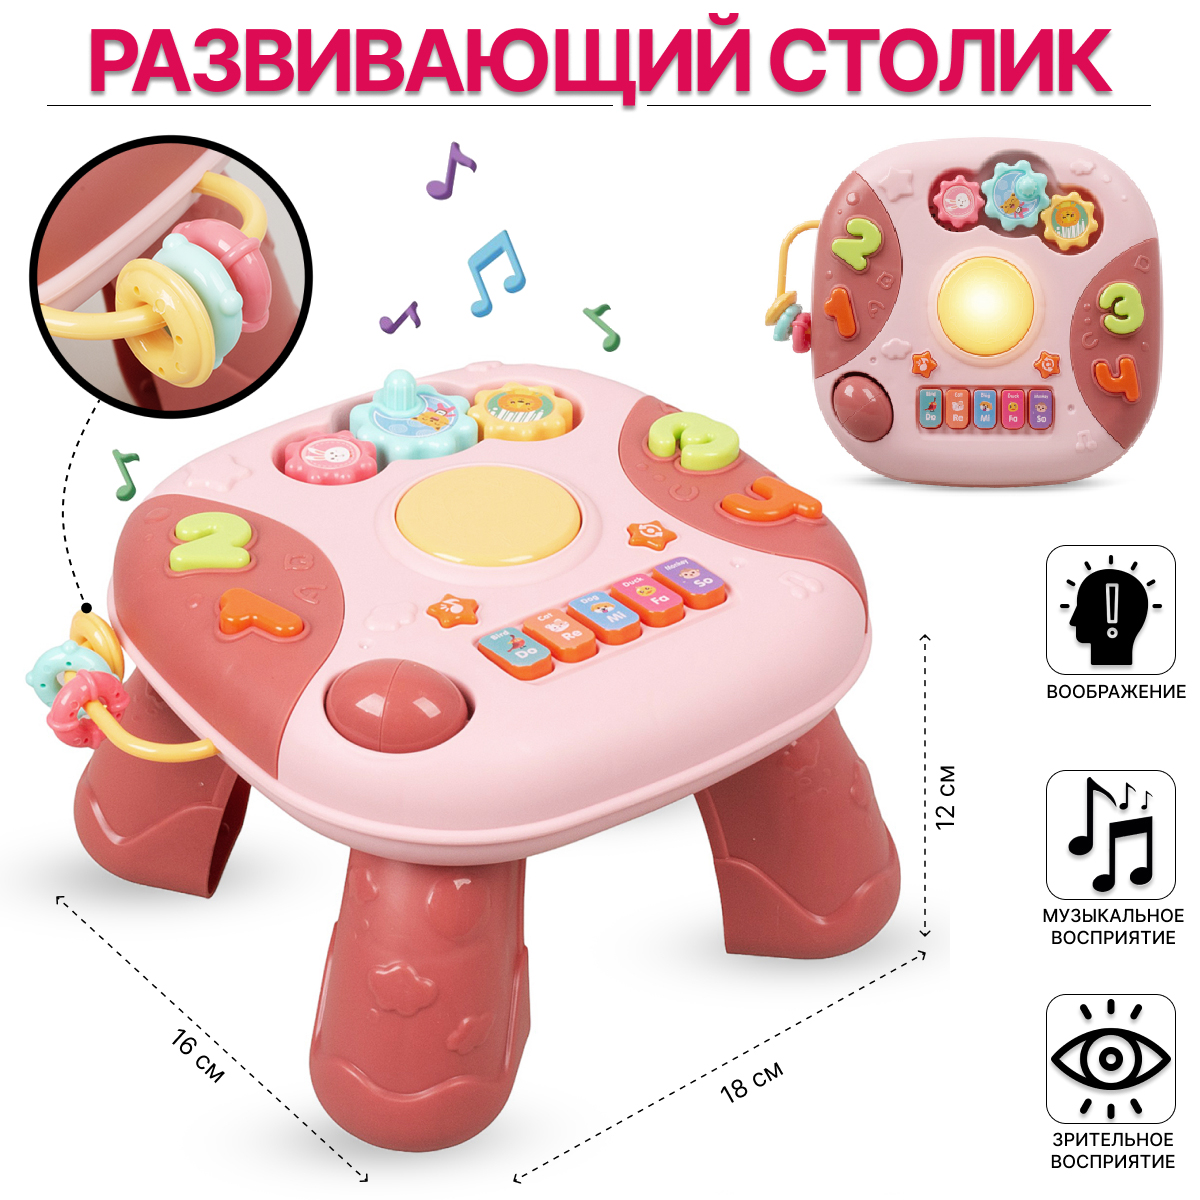 Развивающий игровой Столик Tongde со звуковыми эффектами 6811А